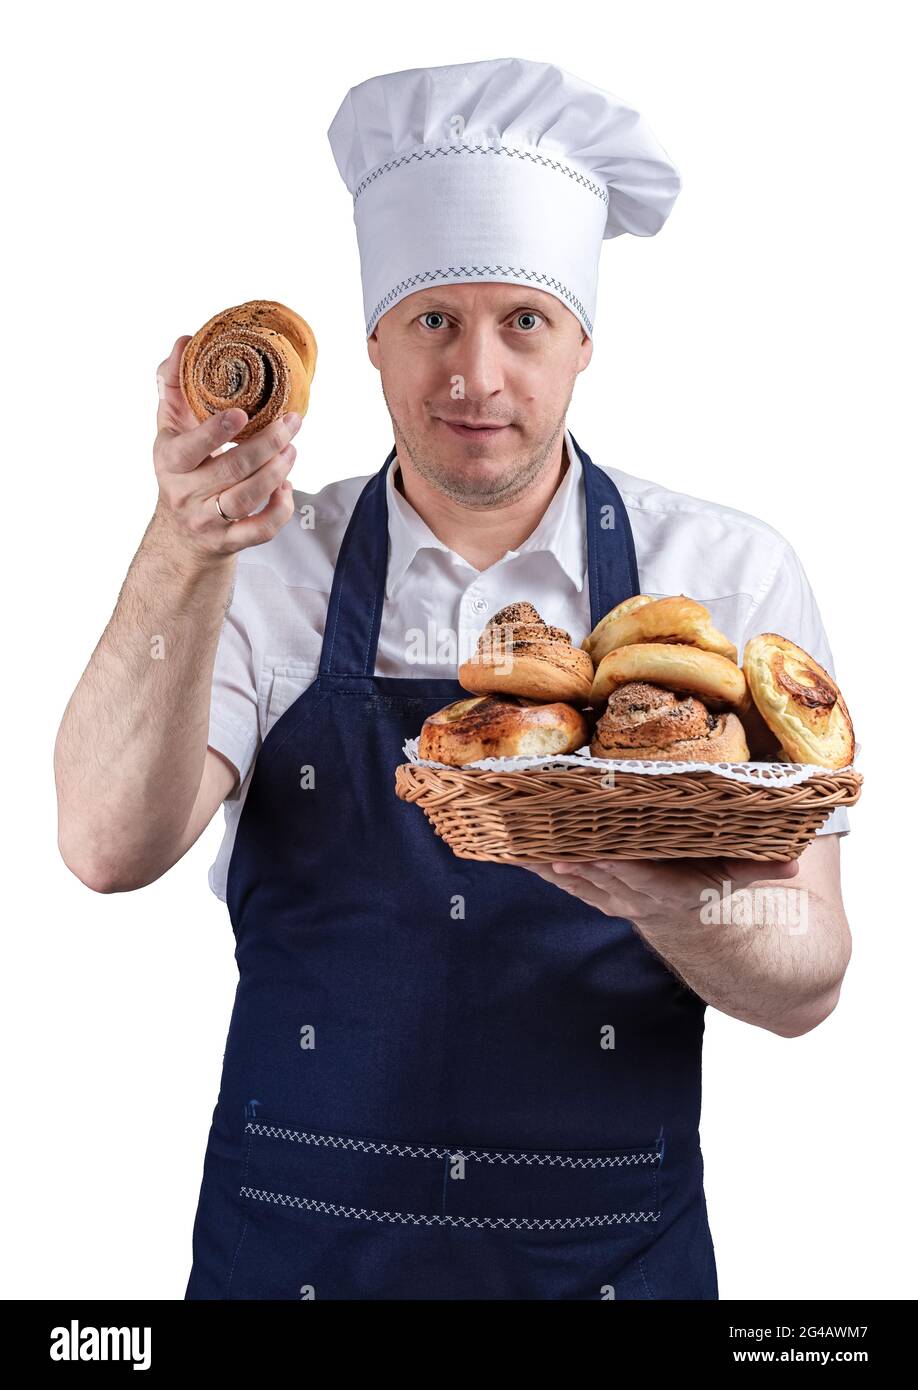 Chef cuisinier, boulanger ou serveur, sur fond blanc, présente les petits  pains cuits, tient un petit pain dans une main, d'autre part il y a un  panier en osier avec un petit